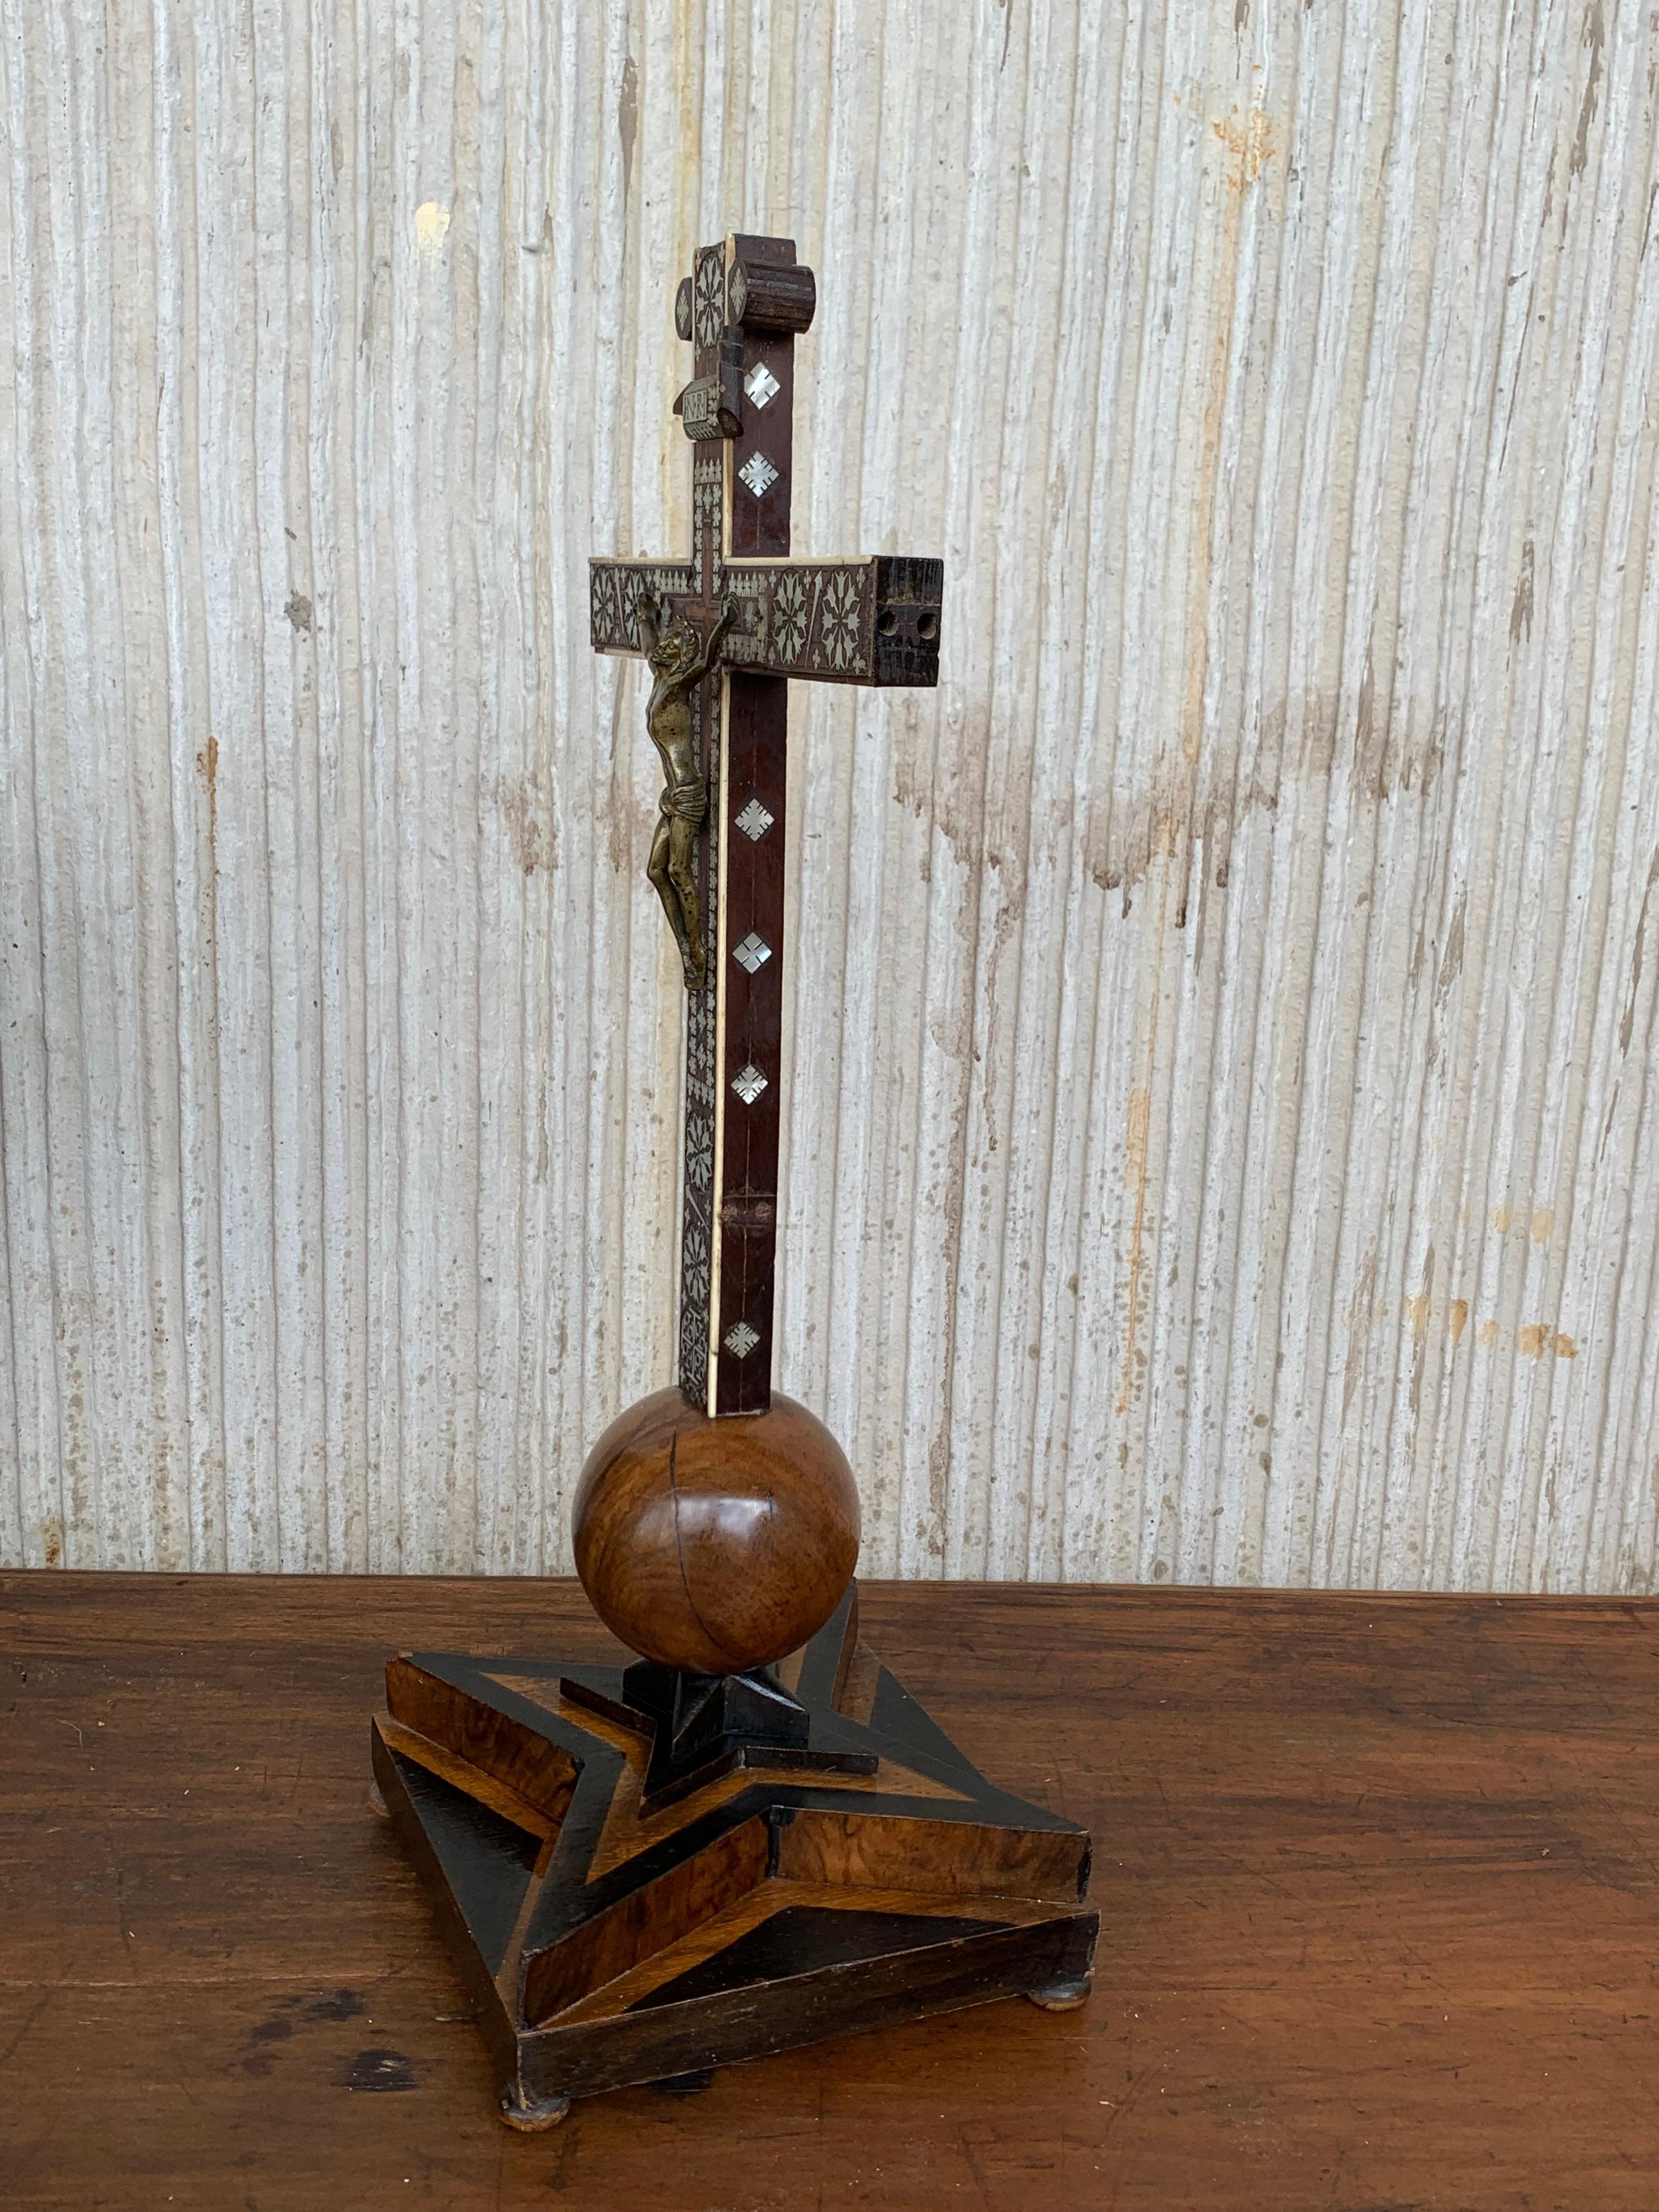 Kruzifix aus der Mitte des 18. Jahrhunderts mit einem geschnitzten Leichentuch oder Schleier, das Christus im Sockel darstellt. Dieses einzigartige und bemerkenswerte antike Kruzifix kann sowohl als Tisch- als auch als Wandkruzifix verwendet werden.